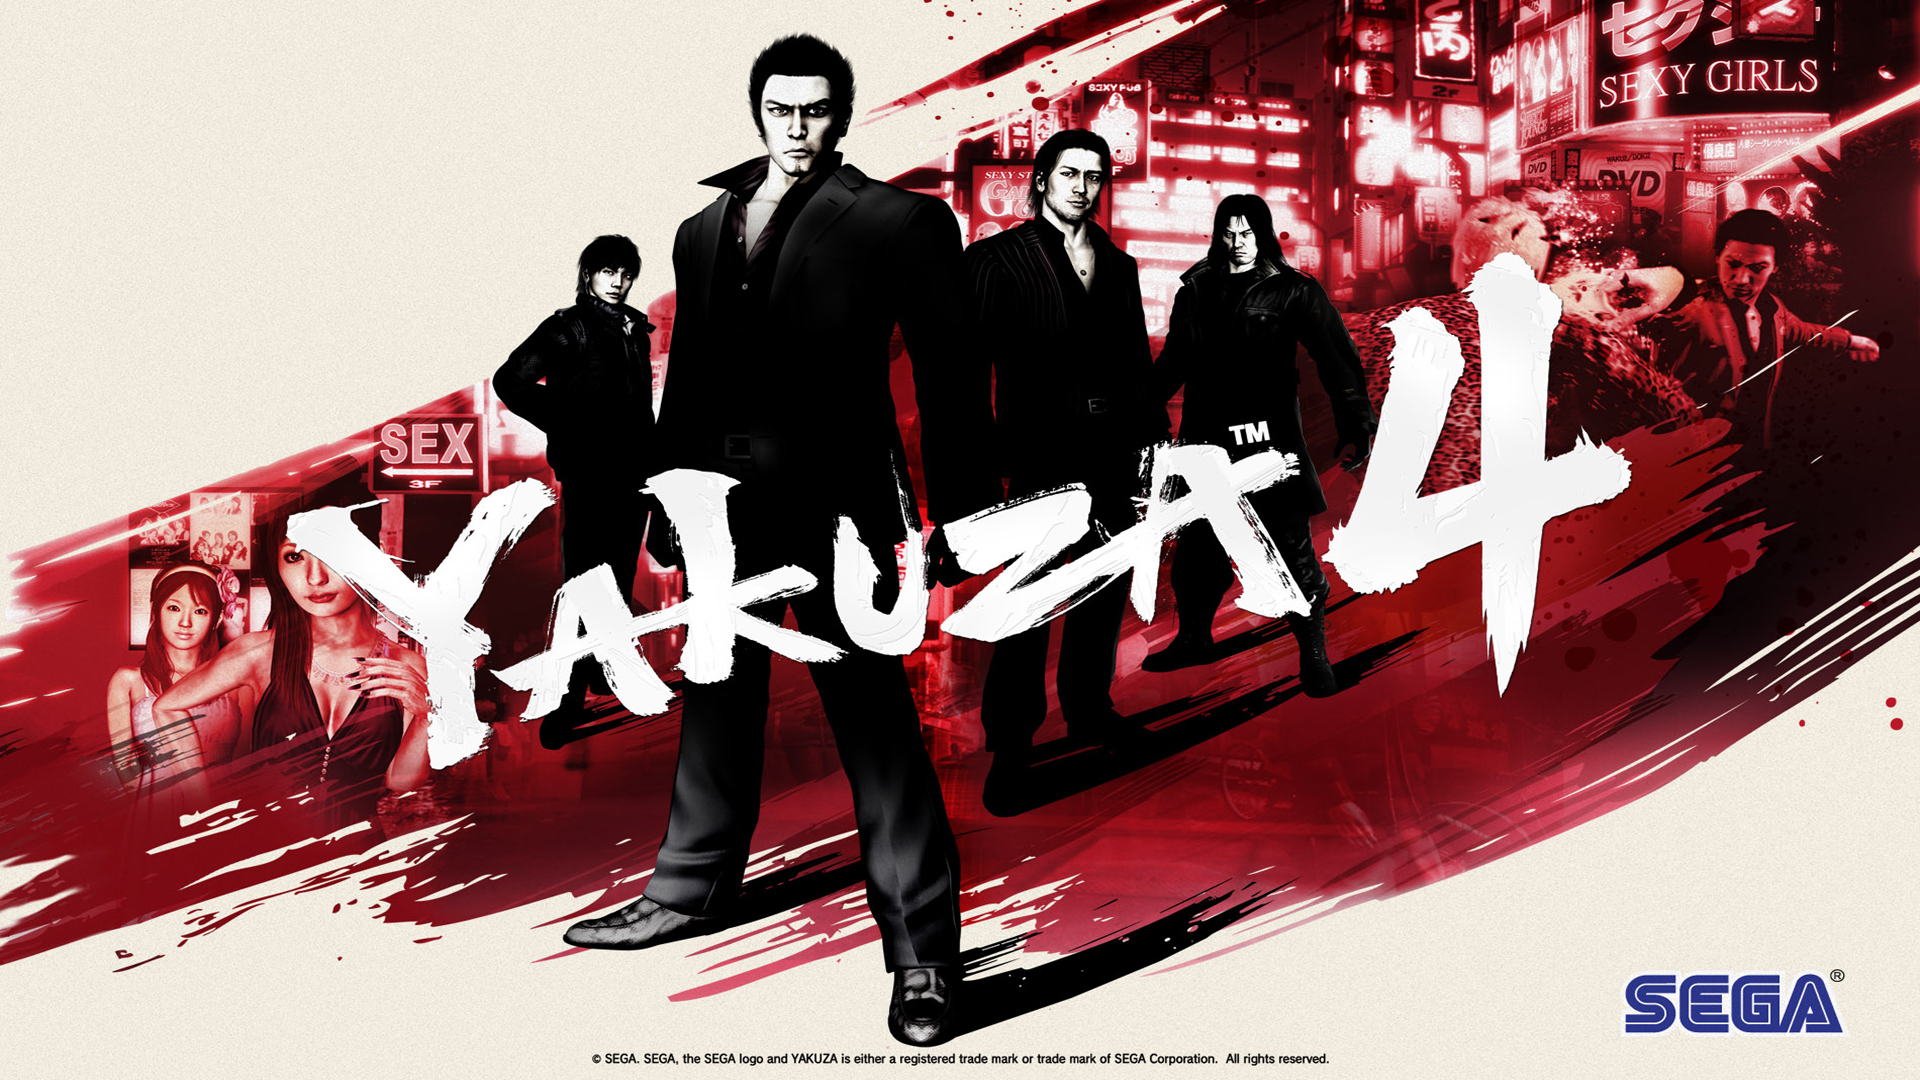 yakuza 4, video game, kazuma kiryu, masayoshi tanimura, shun akiyama, taiga saejima